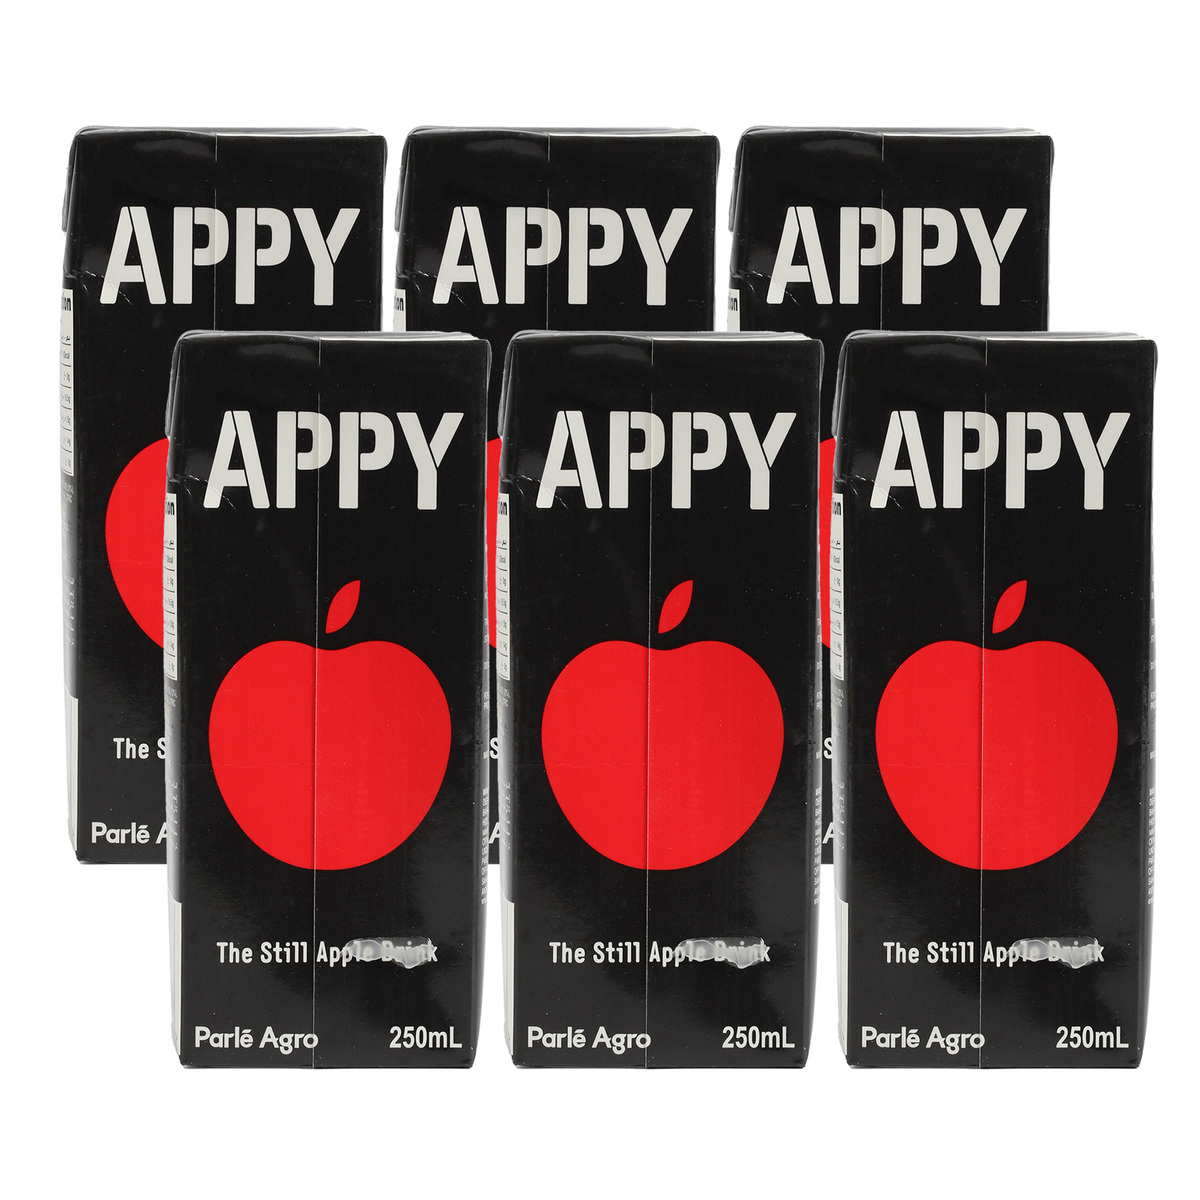 Appy Apple Drink 12 x 250 ml